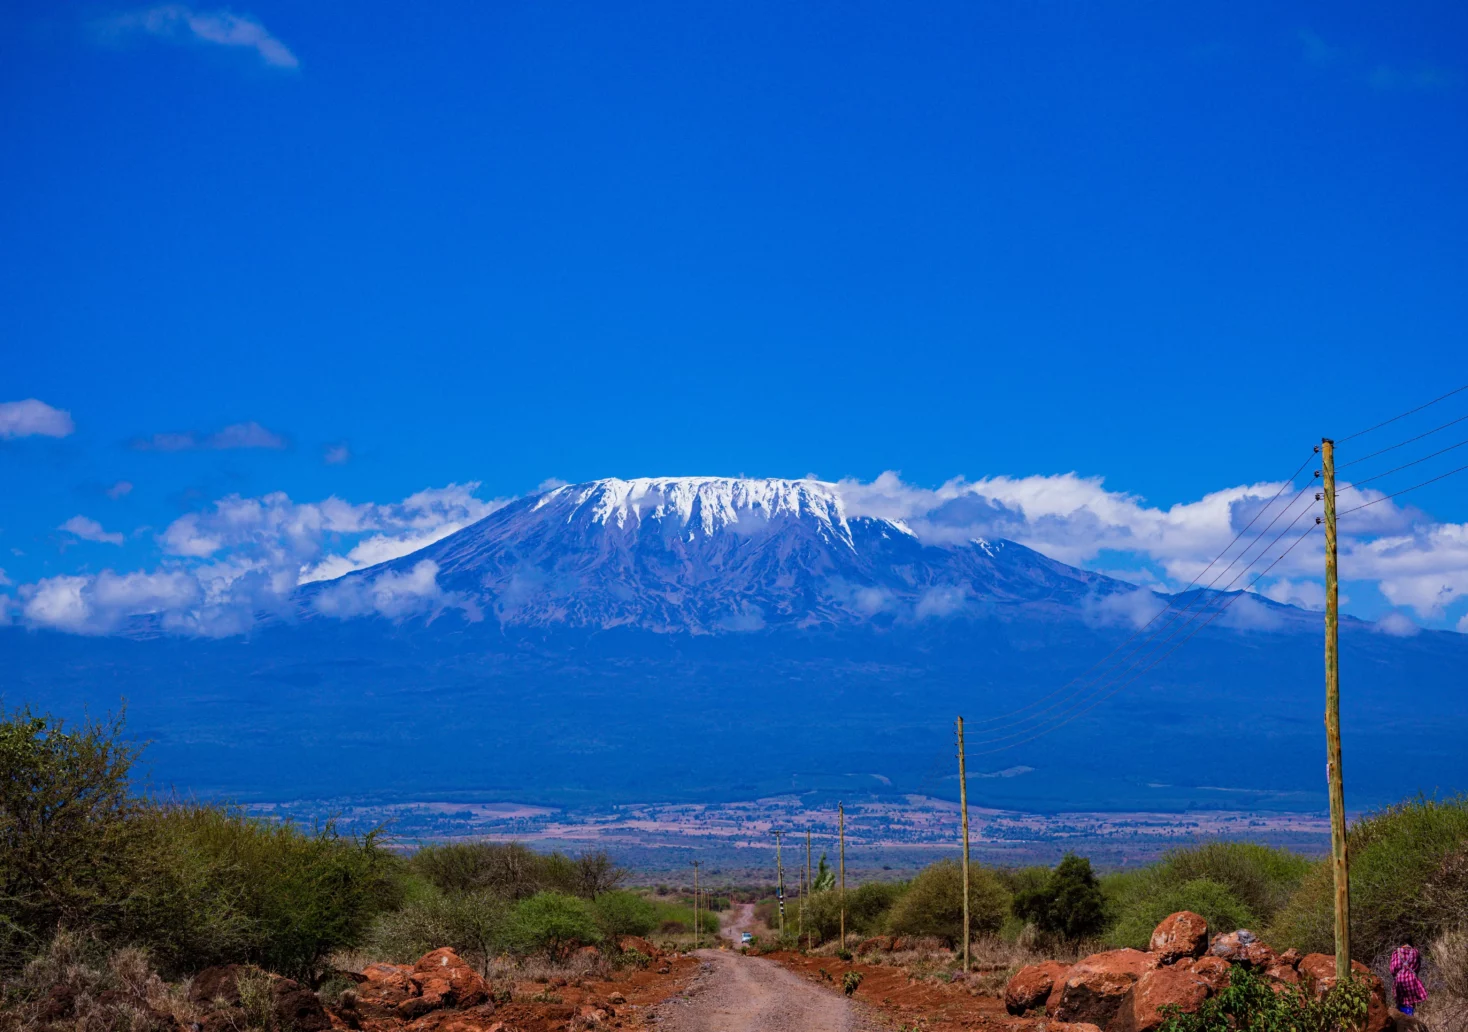 Bild auf 5min.at zeigt den Kilimandscharo.